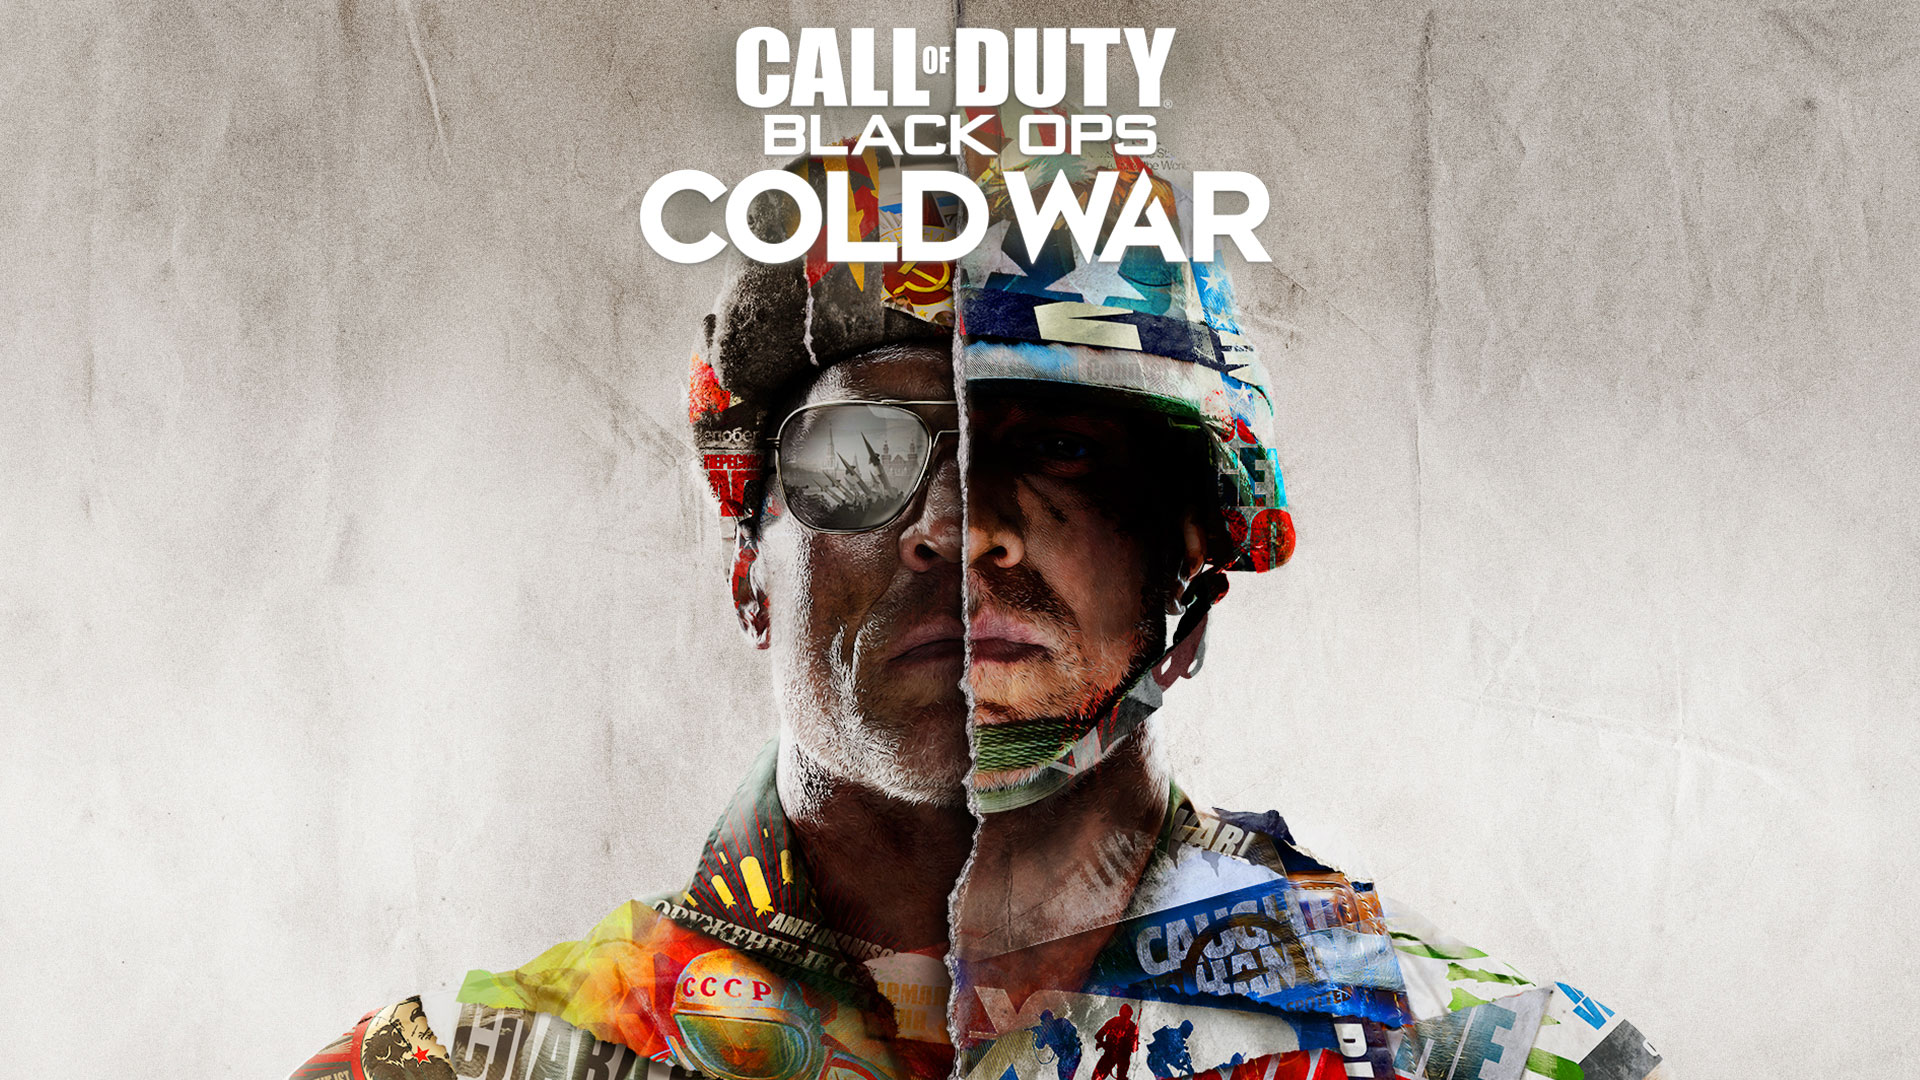 بازی ندای وظیفه جنگ سرد Call of Duty: Black Ops Cold War: جنگ سرد در دهه 80 و ماموریت یک مامورسیا!